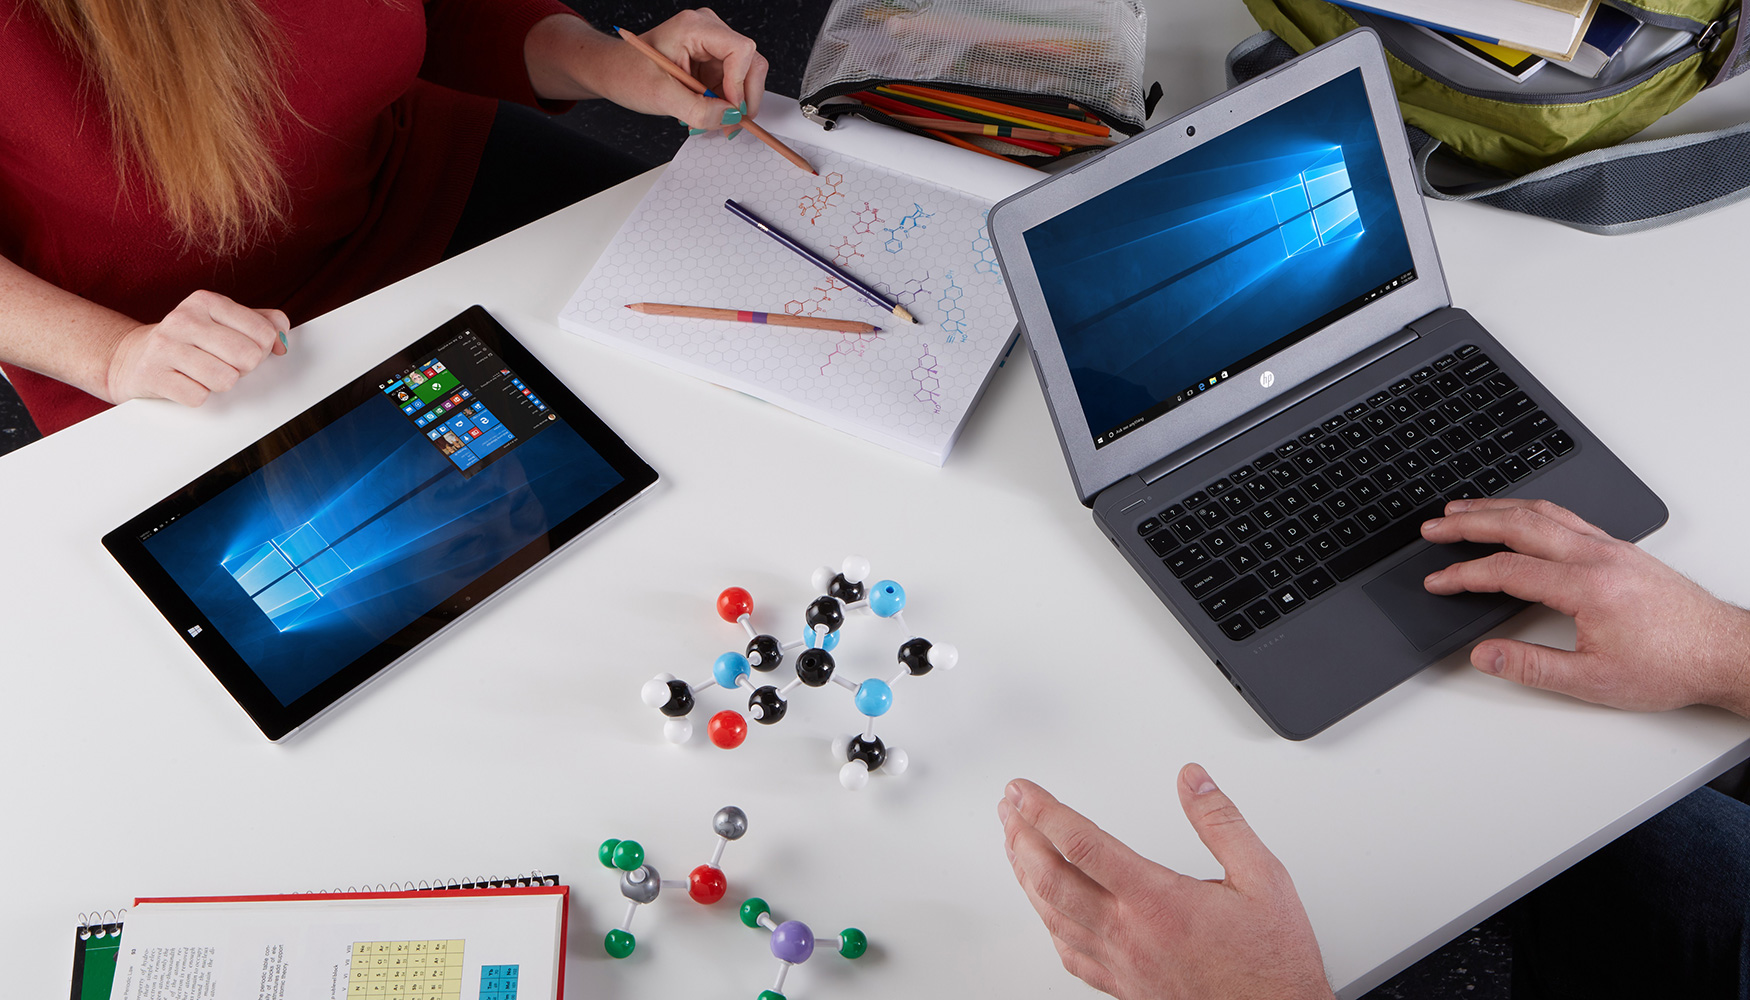 Microsoft pone a disposicin de los profesores tecnologa que fomenta la creatividad, capacidad crtica y habilidad digital de los alumnos...